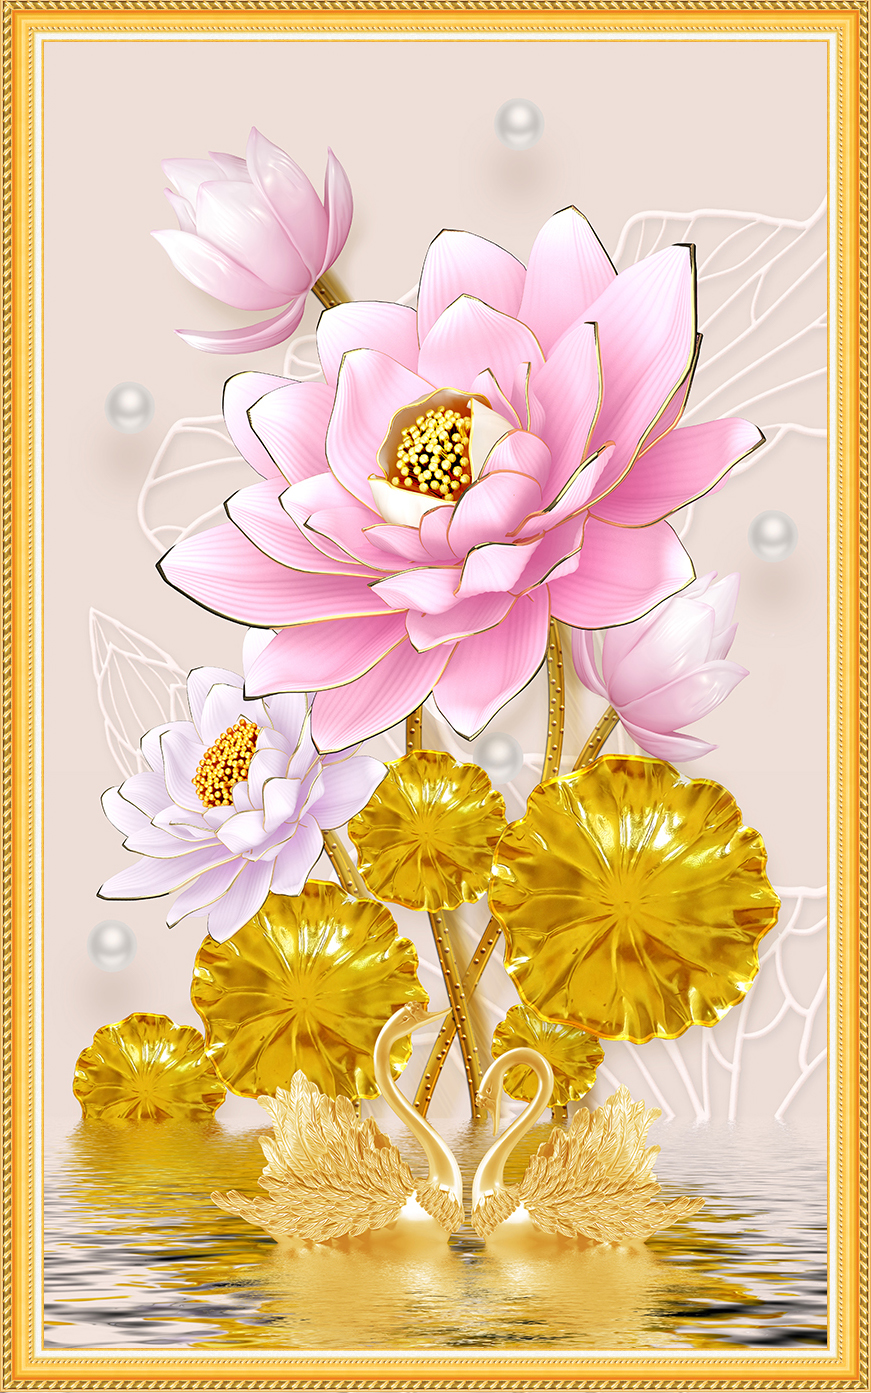 Tranh dán tường Hoa sen hồng tuyệt đẹp ánh kim sa LV-0263K